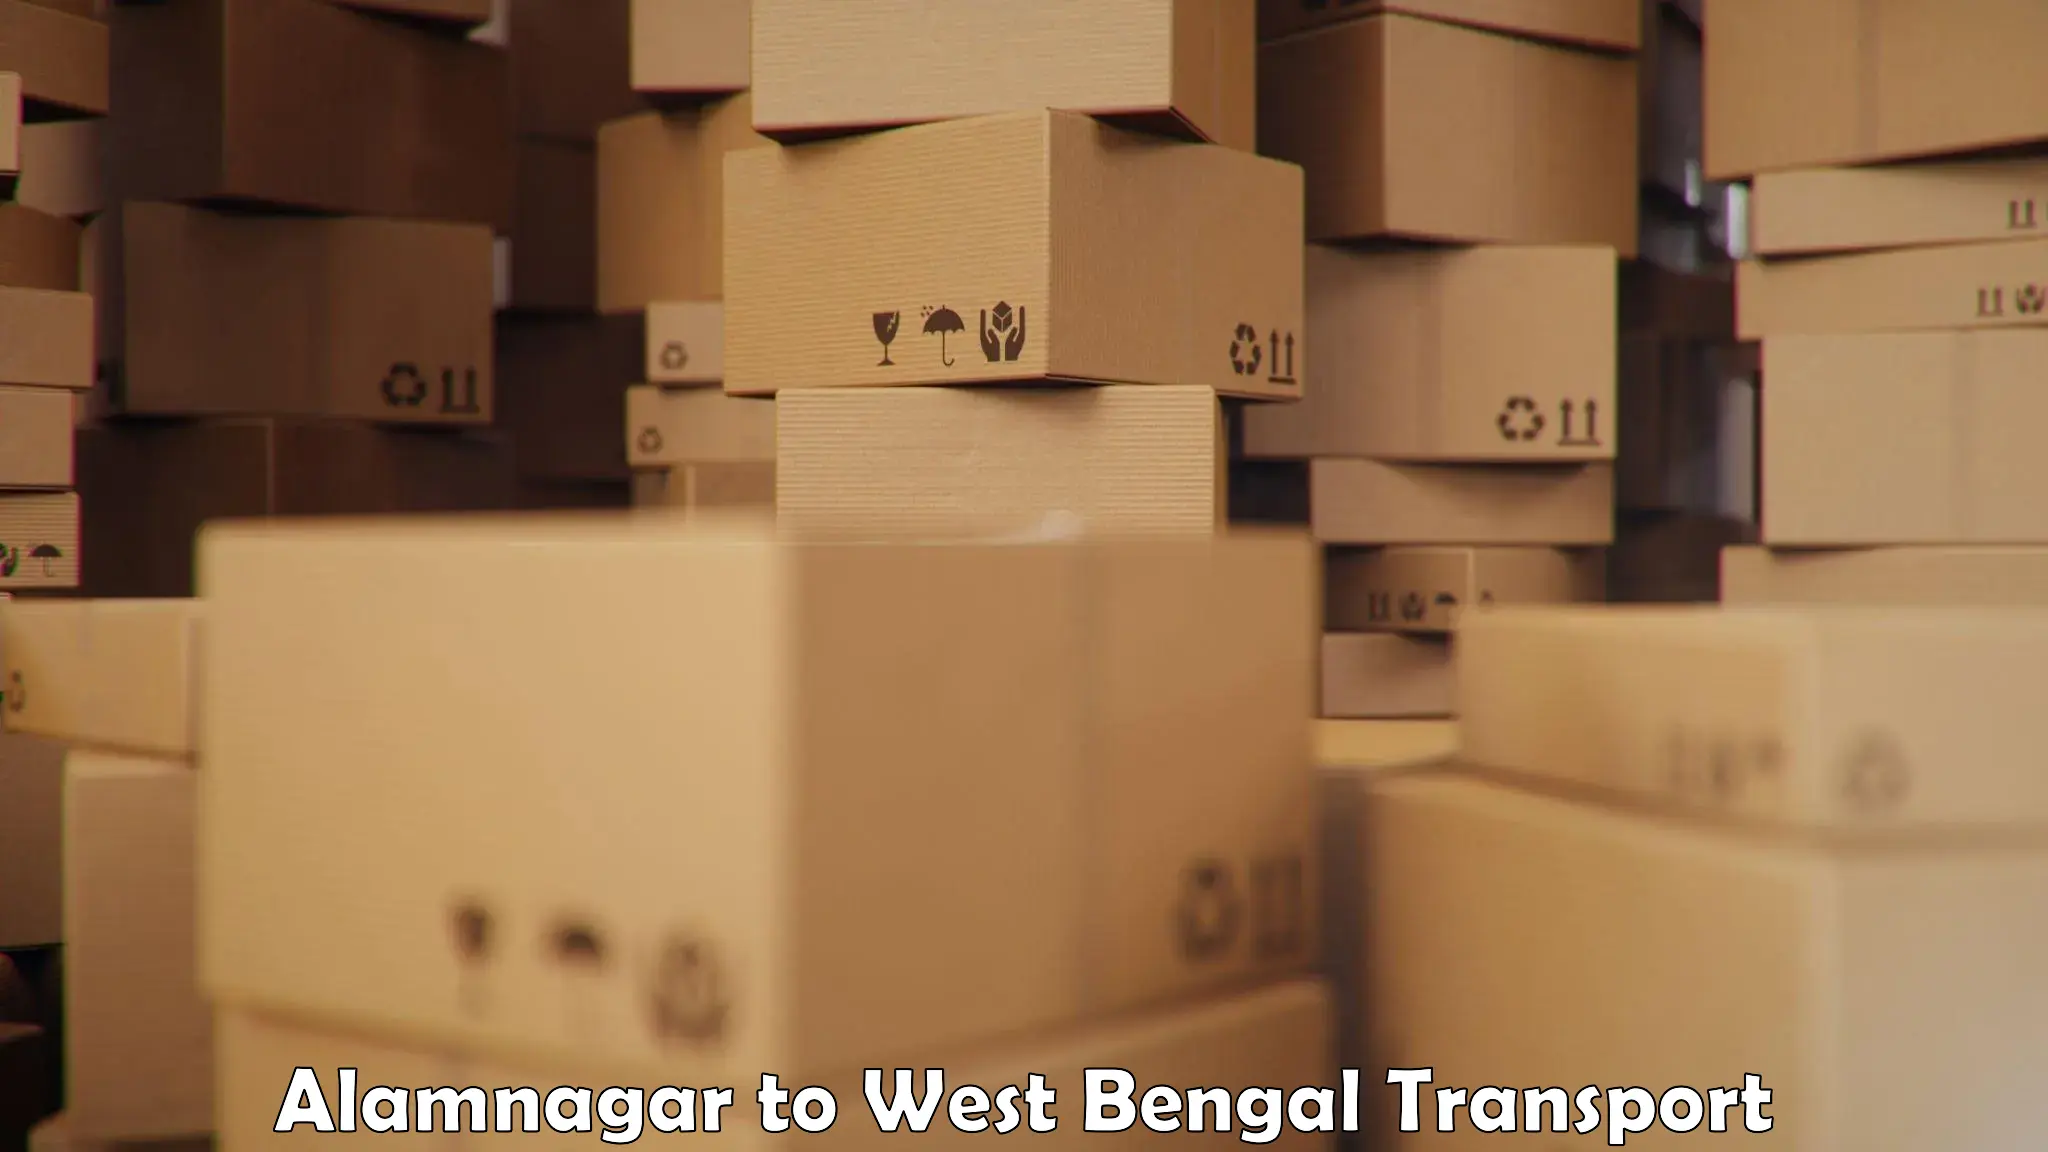 Shipping partner Alamnagar to Krishnanagar